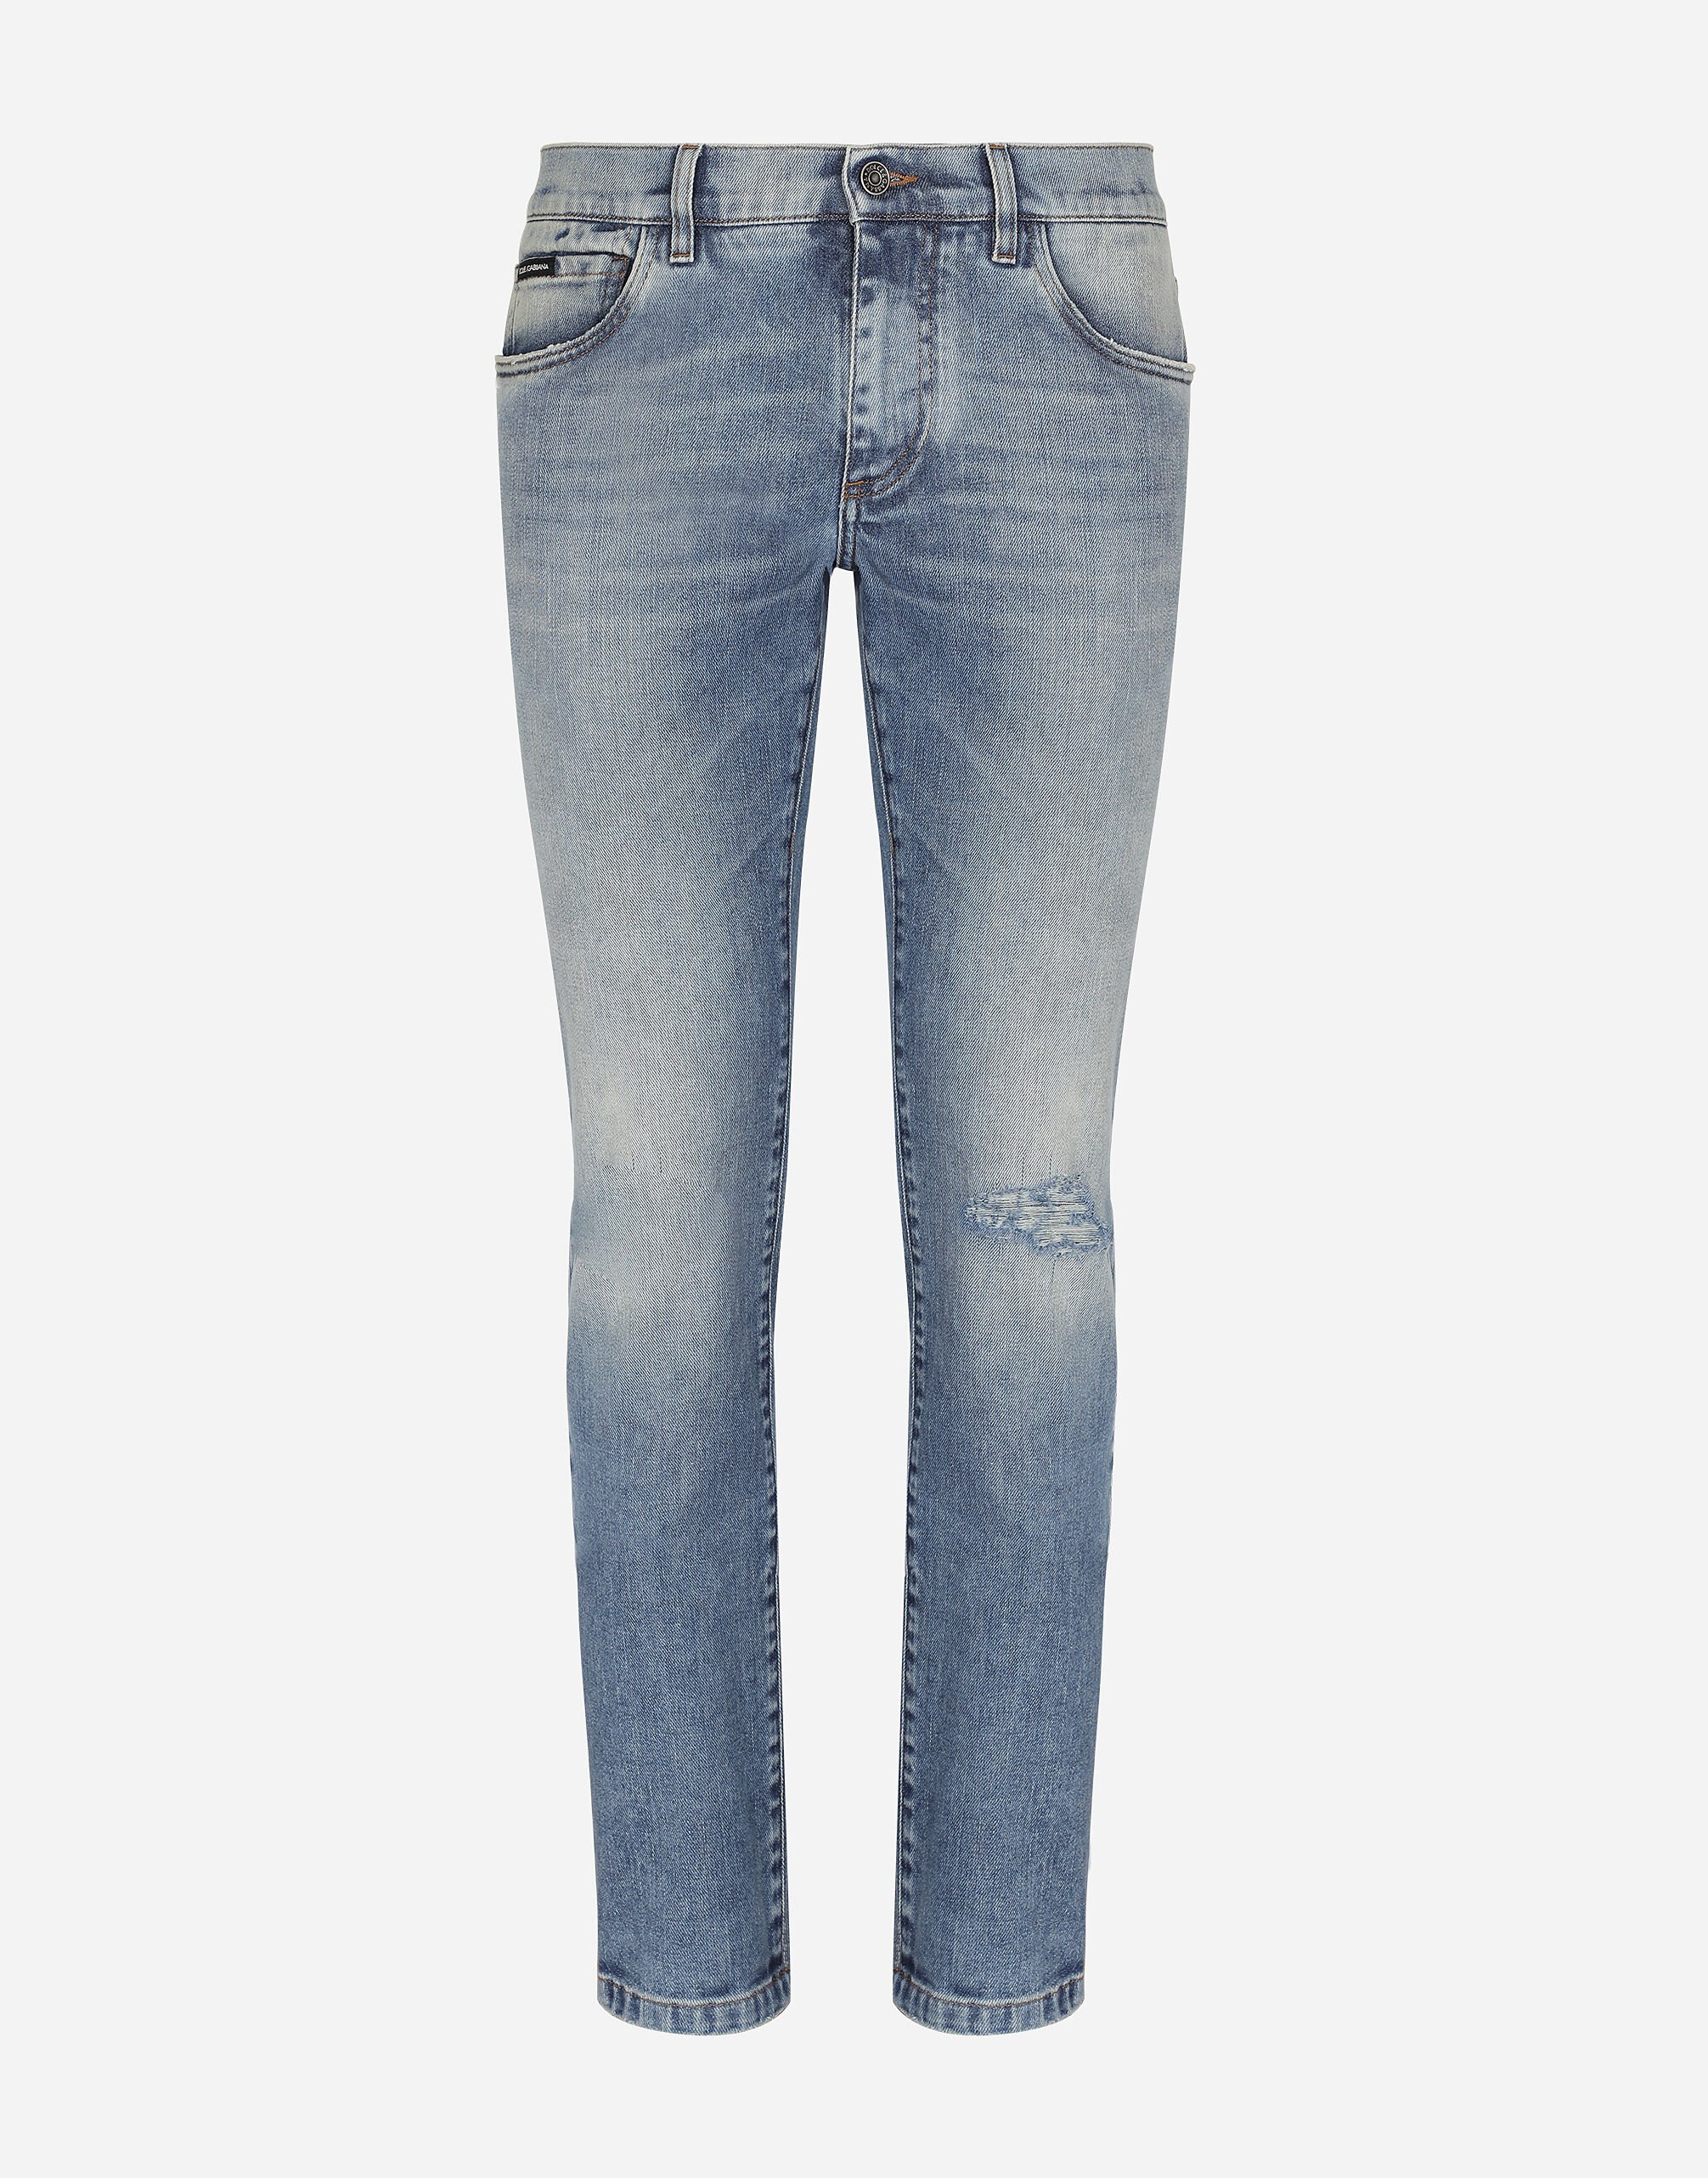 Dolce&Gabbana Light blue skinny stretch jeans with rips Grey GVZ7ATG7KX9